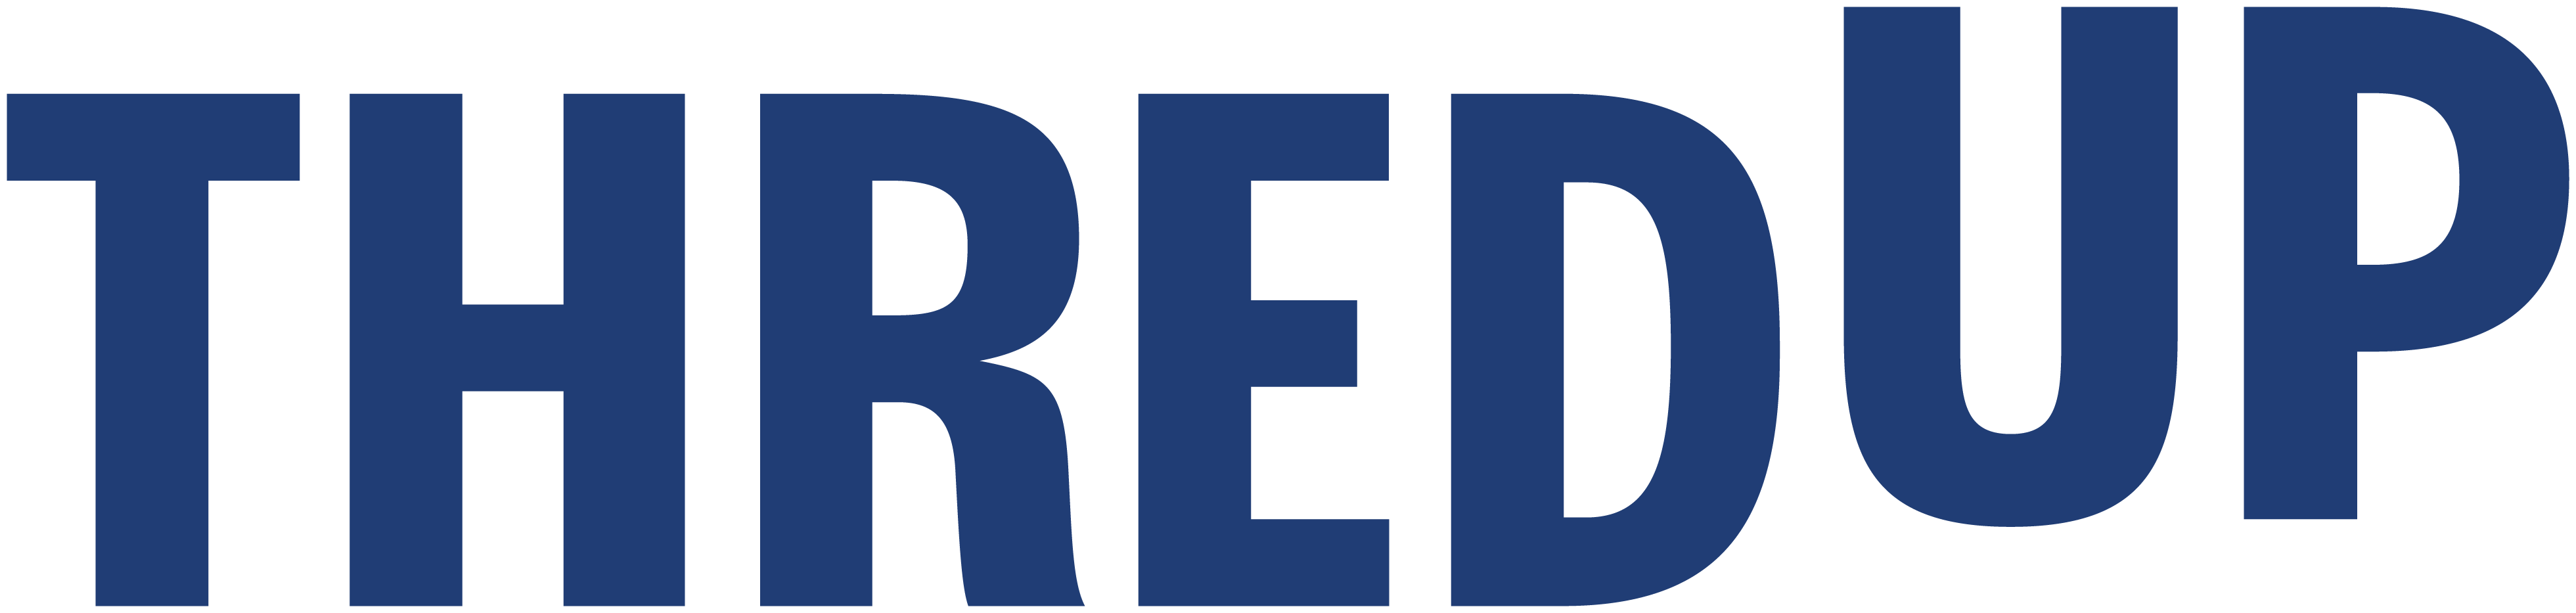 TredUp logo